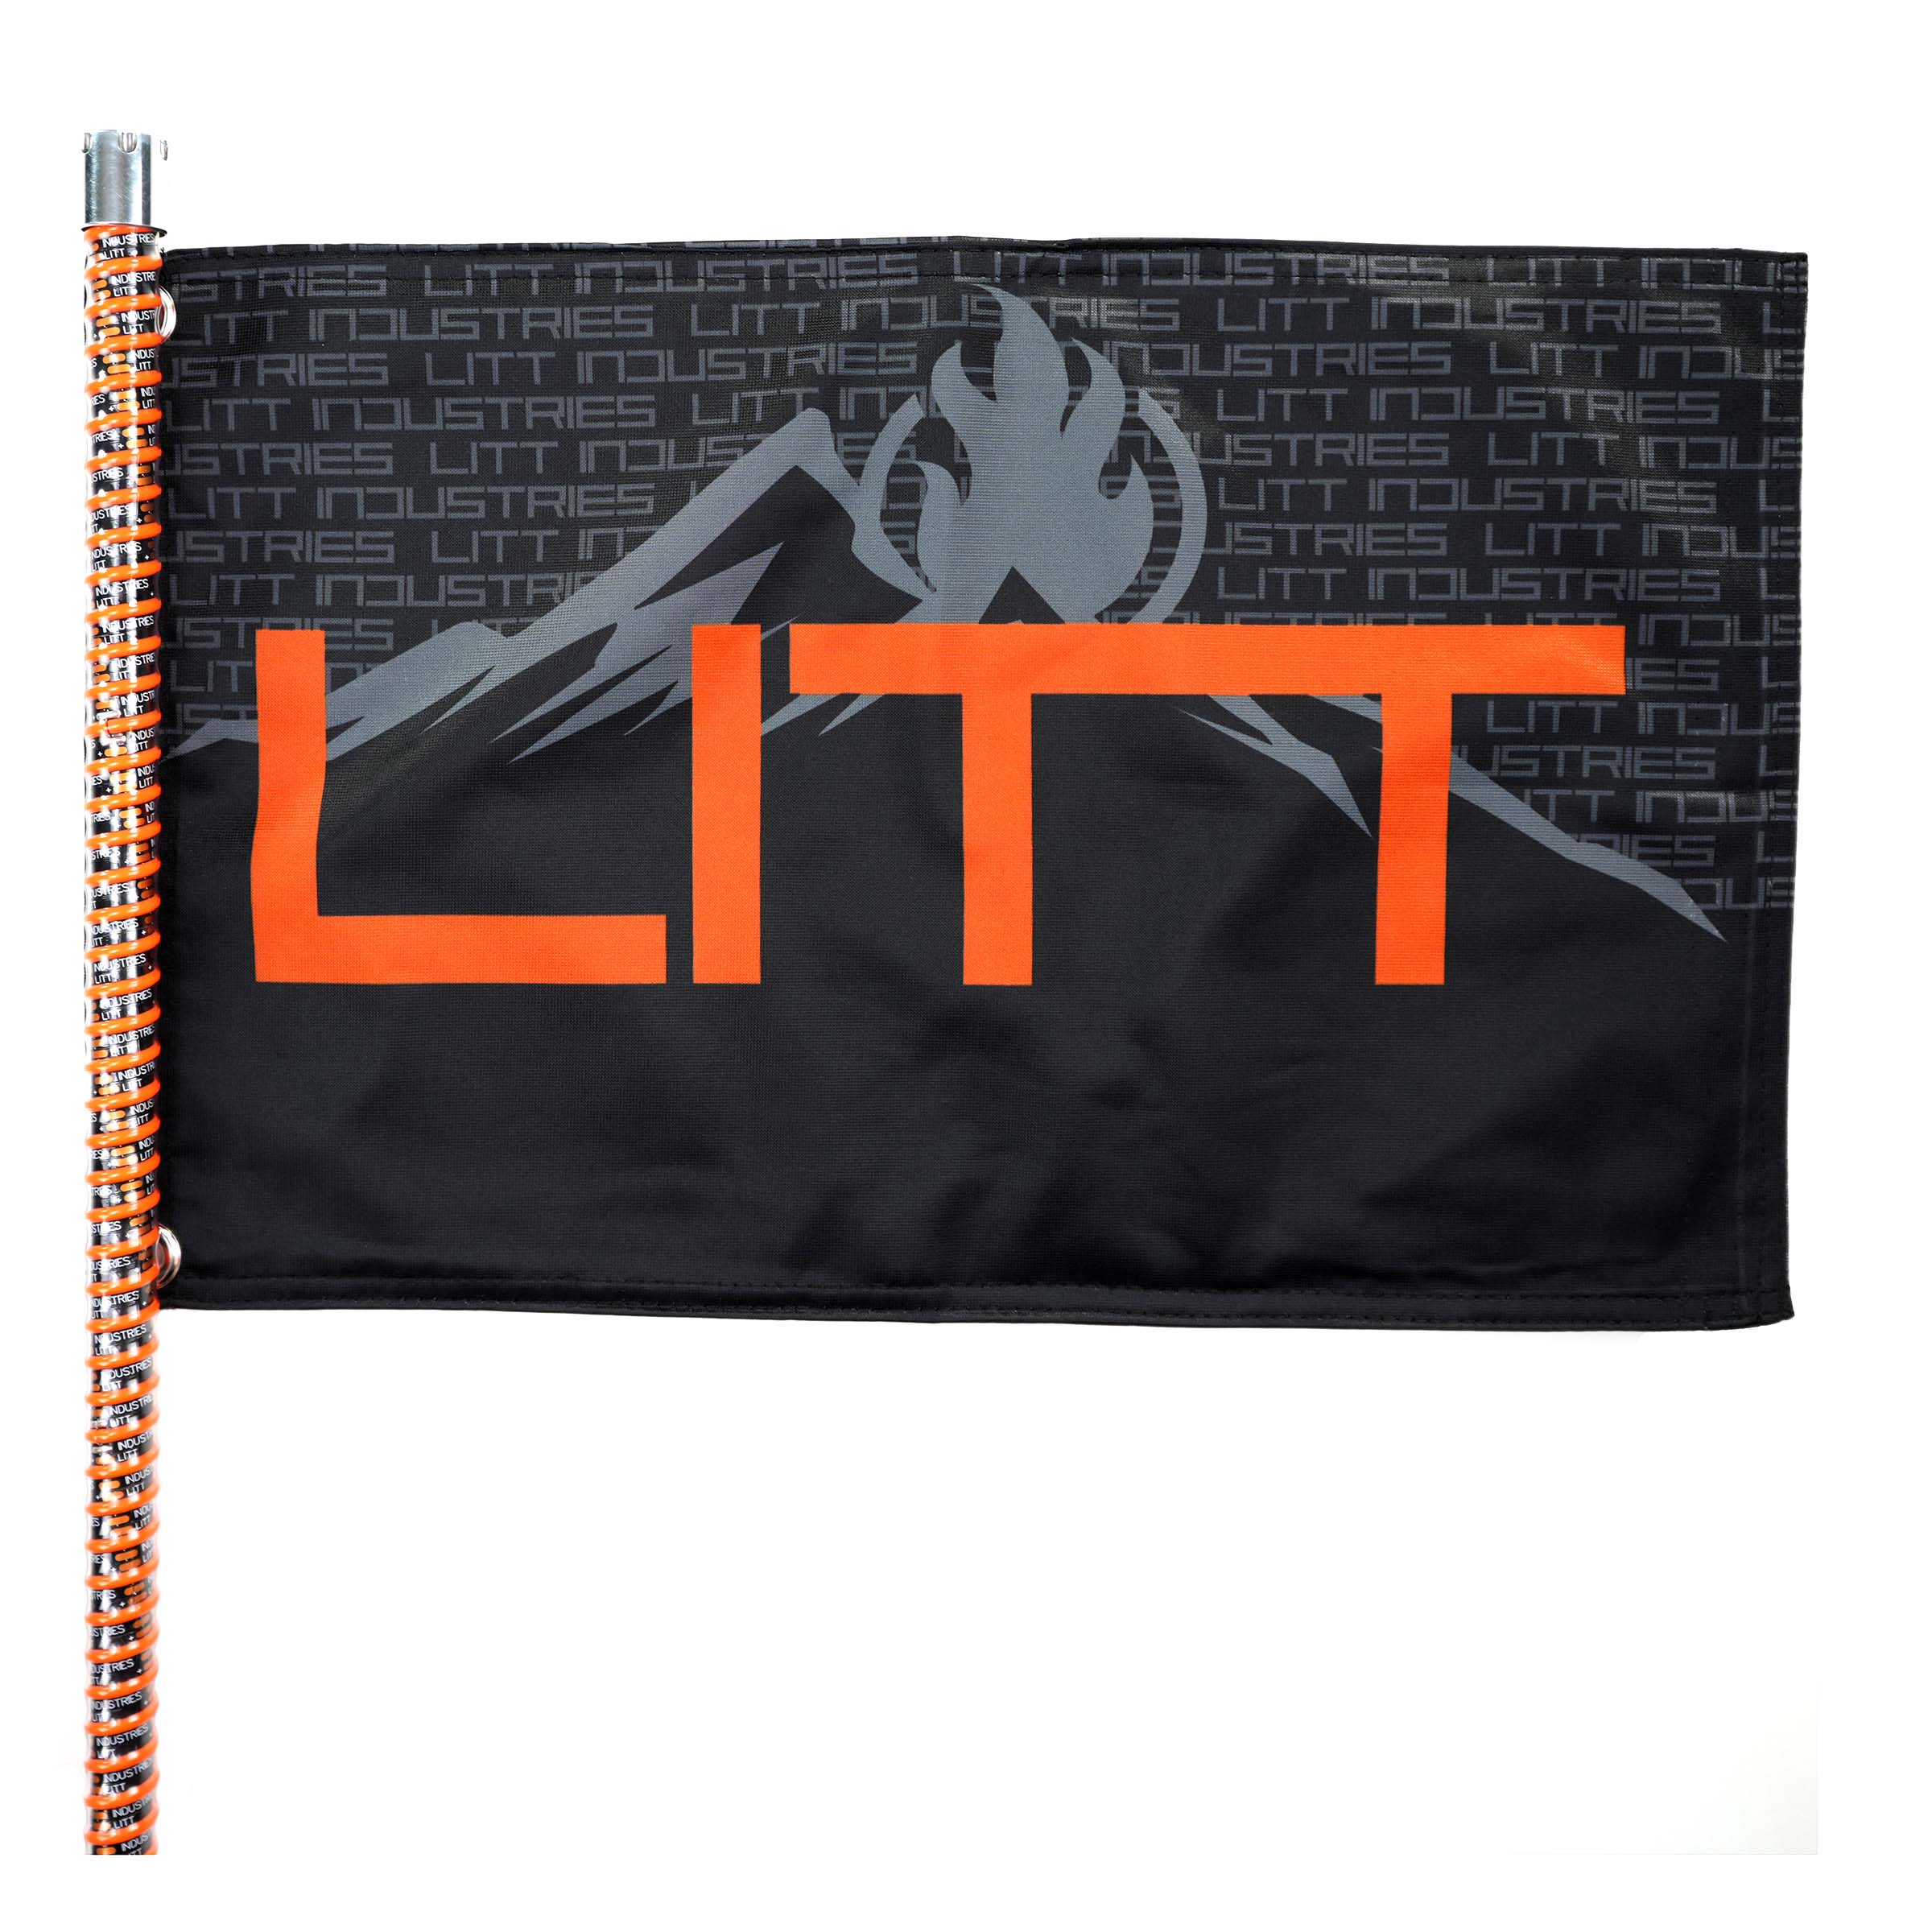 Litt Industries Litt Mountain UTV Flag color orange